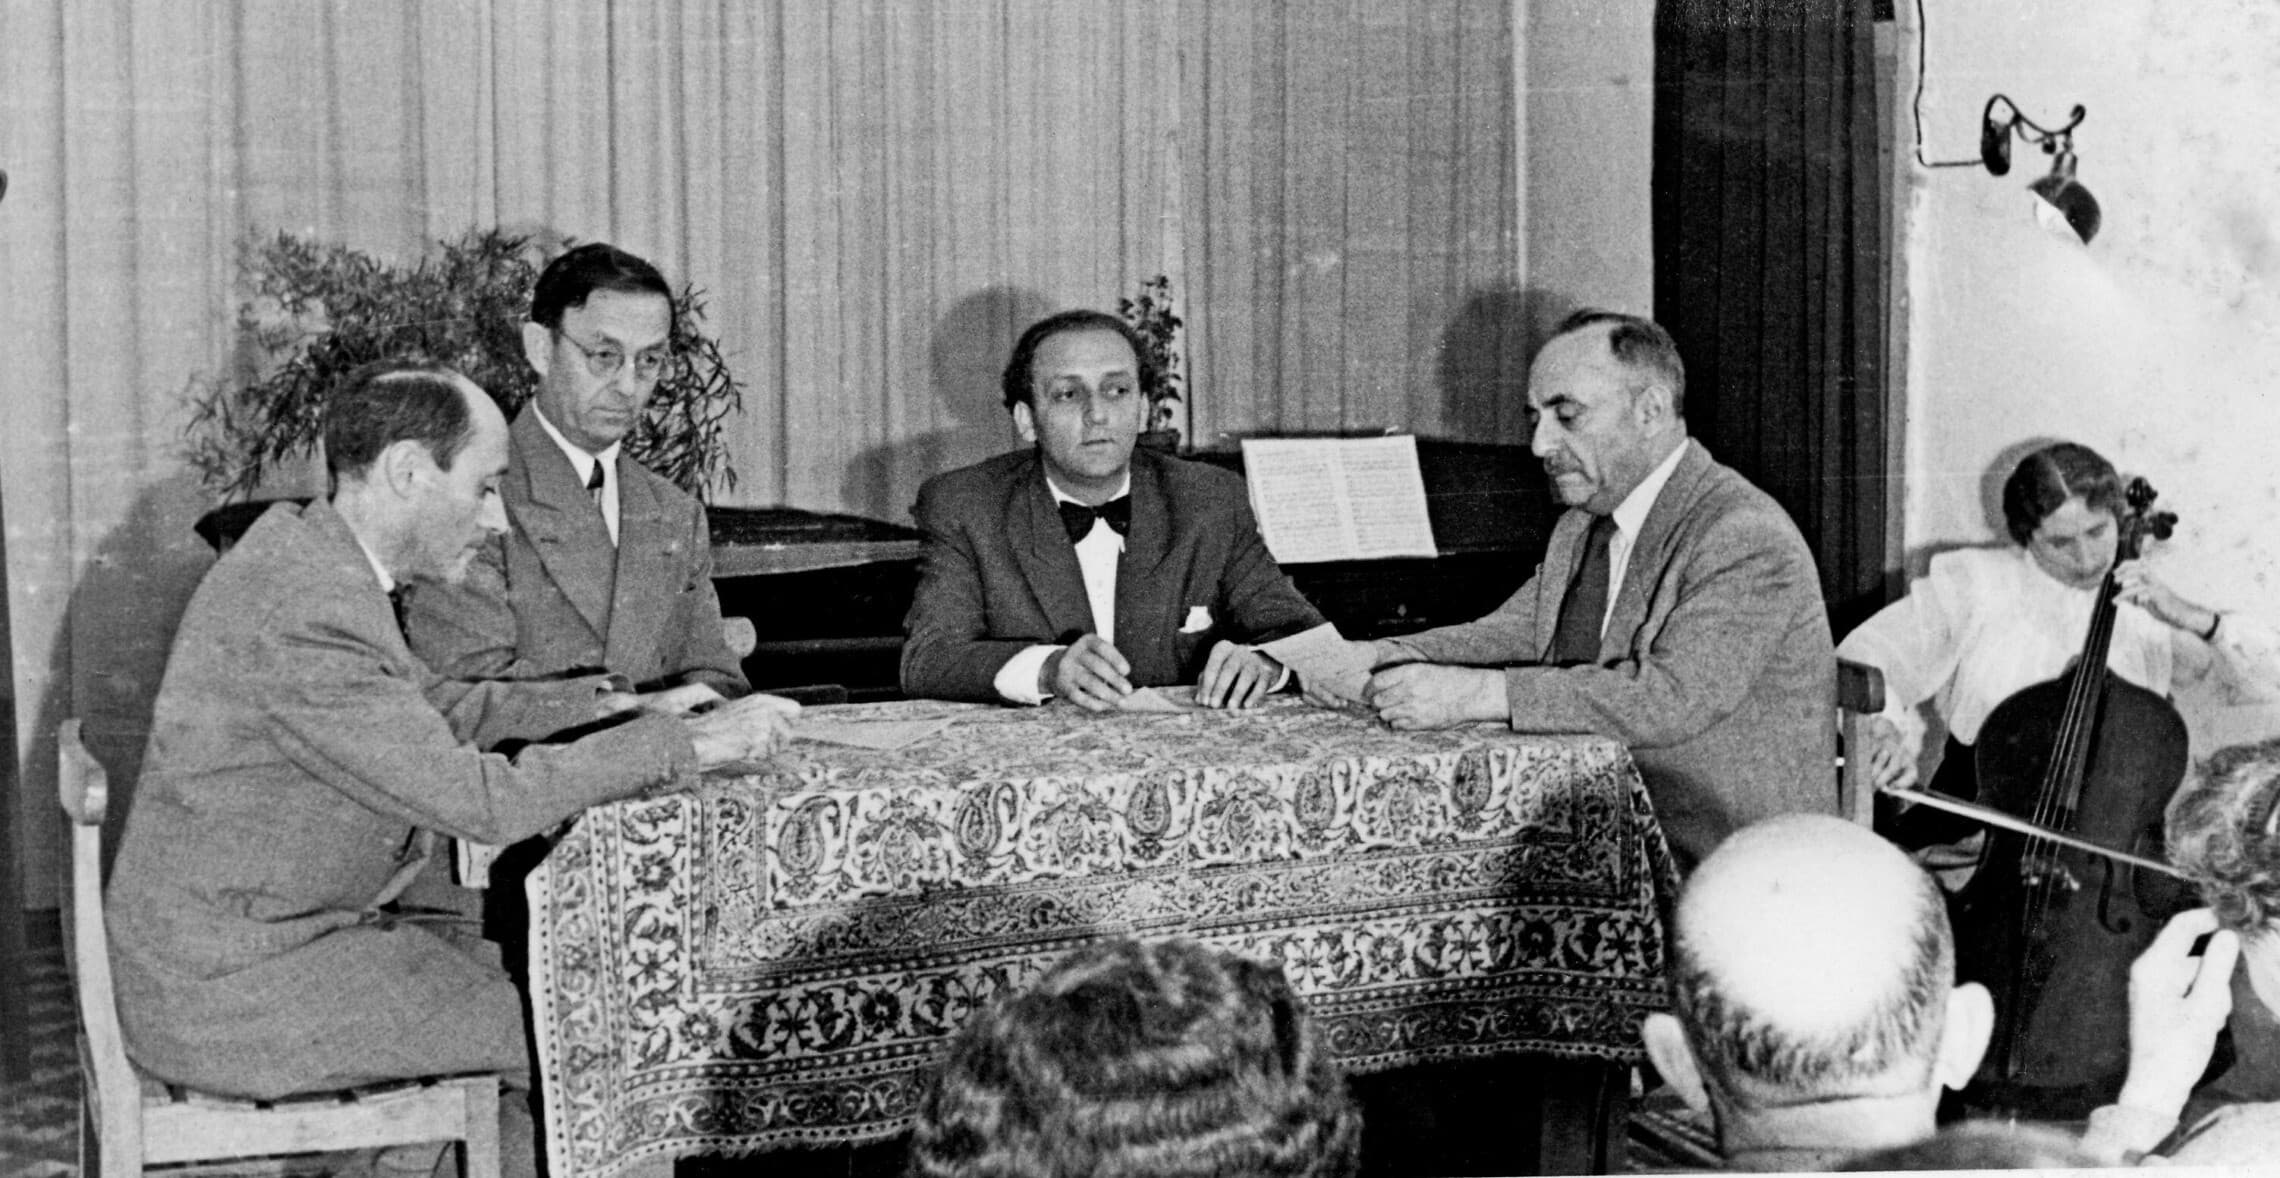 ארוע באקדמיה למוזיקה בירושלים באוקטובר 1950, נשיא בית המשפט העליון משה זמורה יושב הראשון מימין. מאחוריו מנגנת על צ&#039;לו תלמה ילין